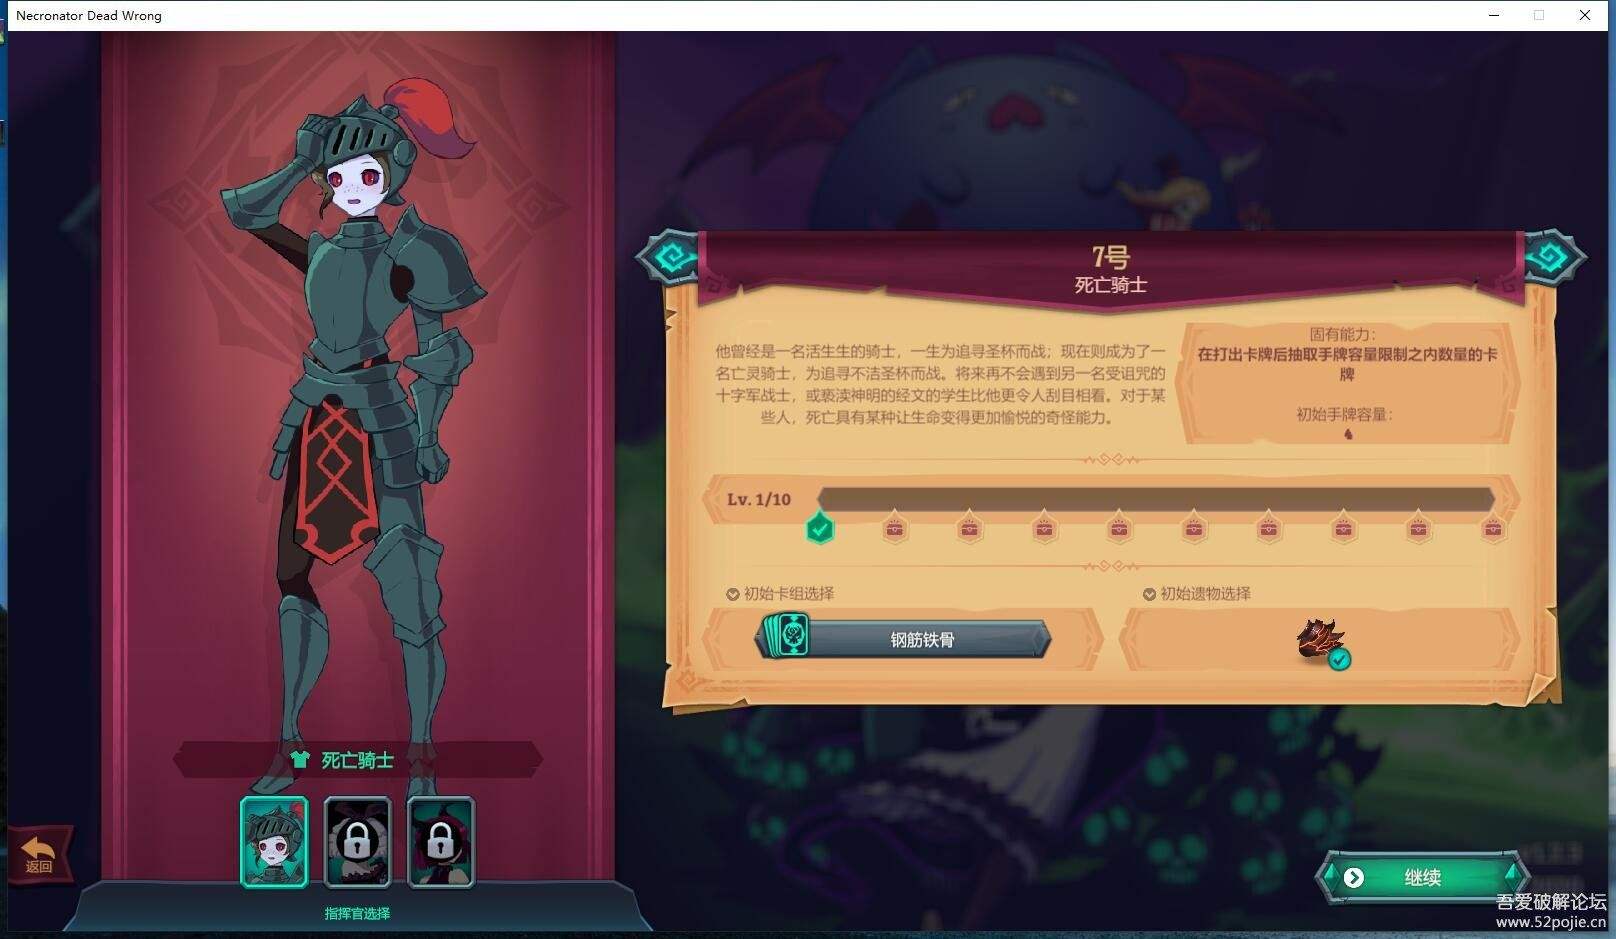 魔君：致命错误 V1.00 官方中文完整版 卡牌即时战略游戏